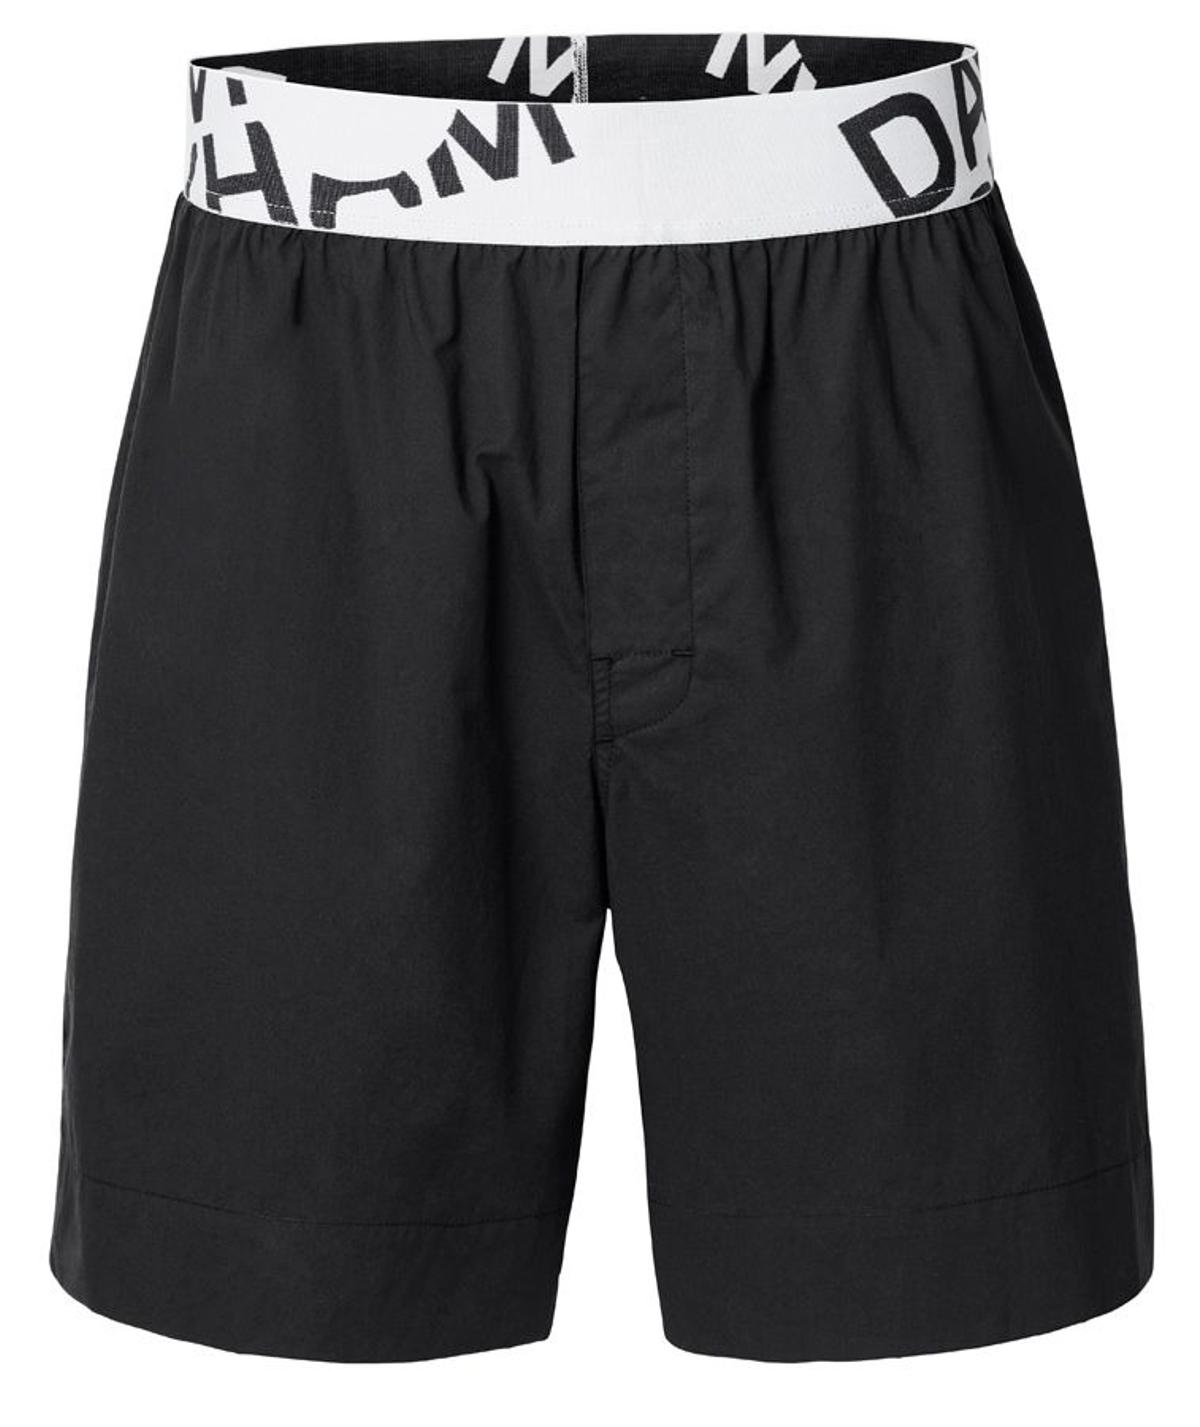 La colección Bodywear de David Beckham para H&amp;M: pantalones deporte